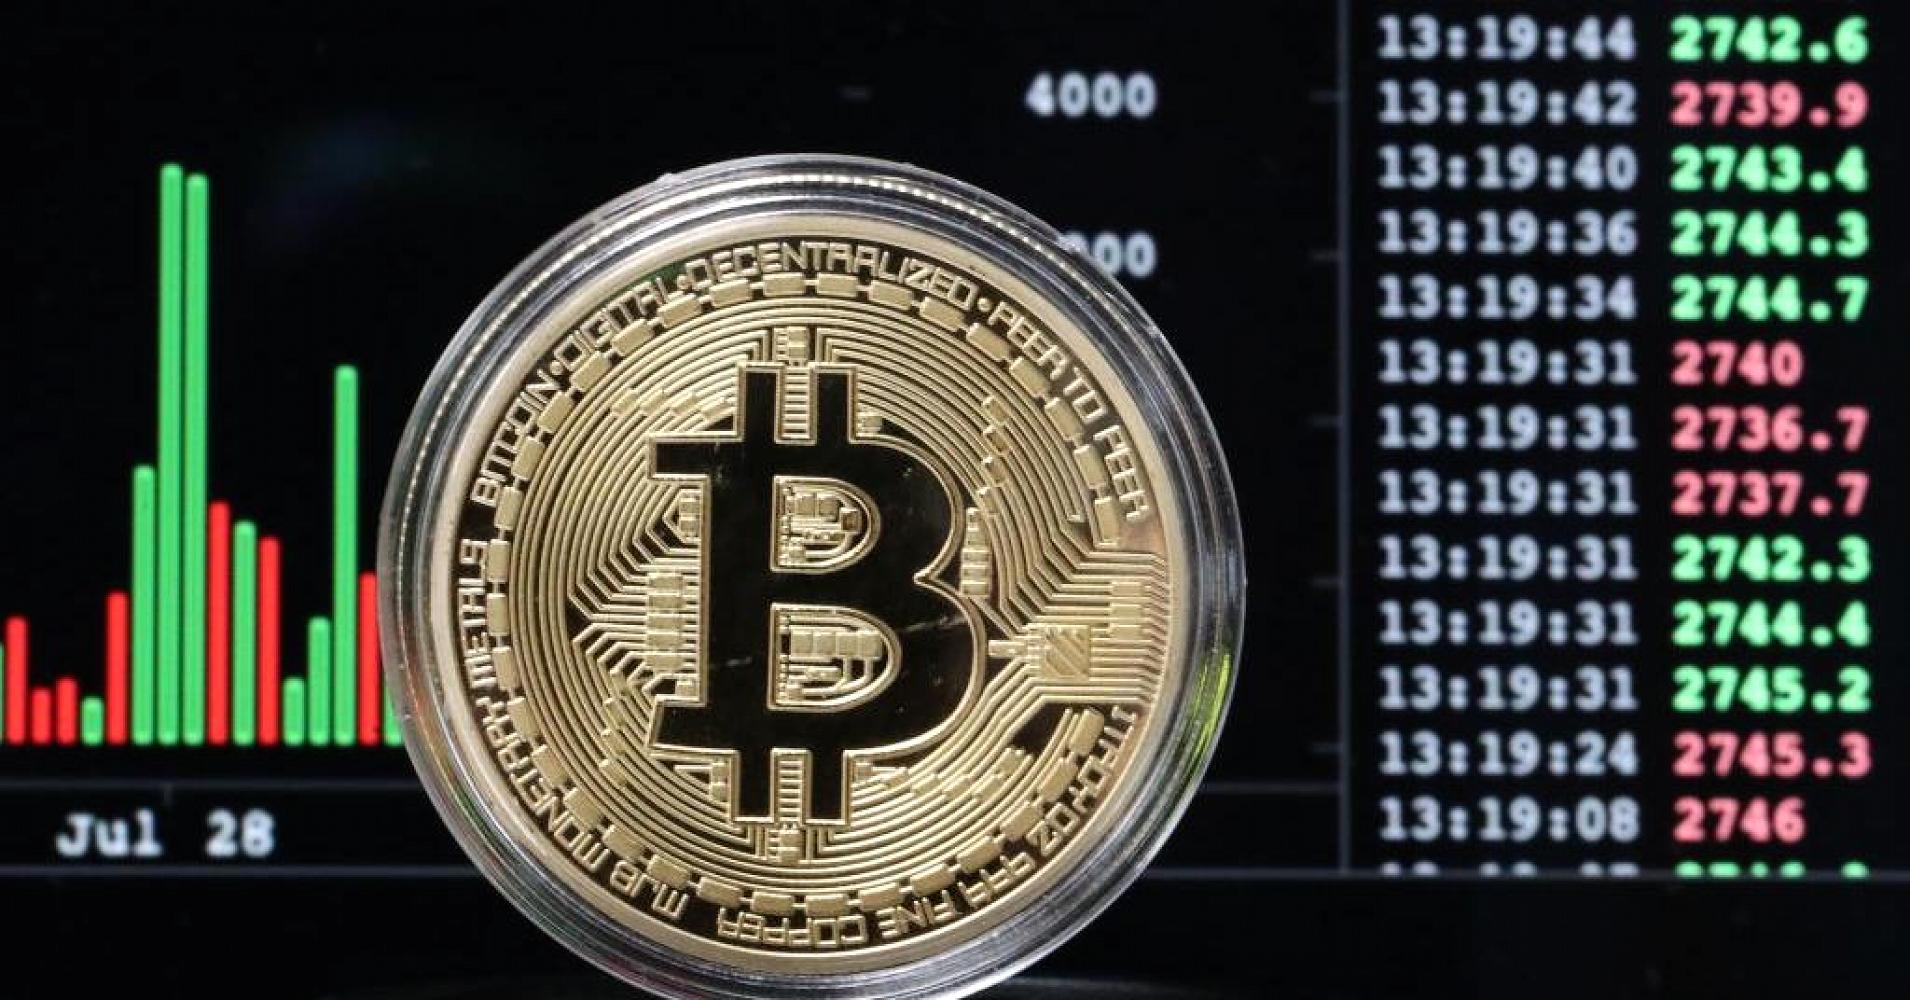 Le bitcoin poursuit sa chute, passe sous 6.400 dollars